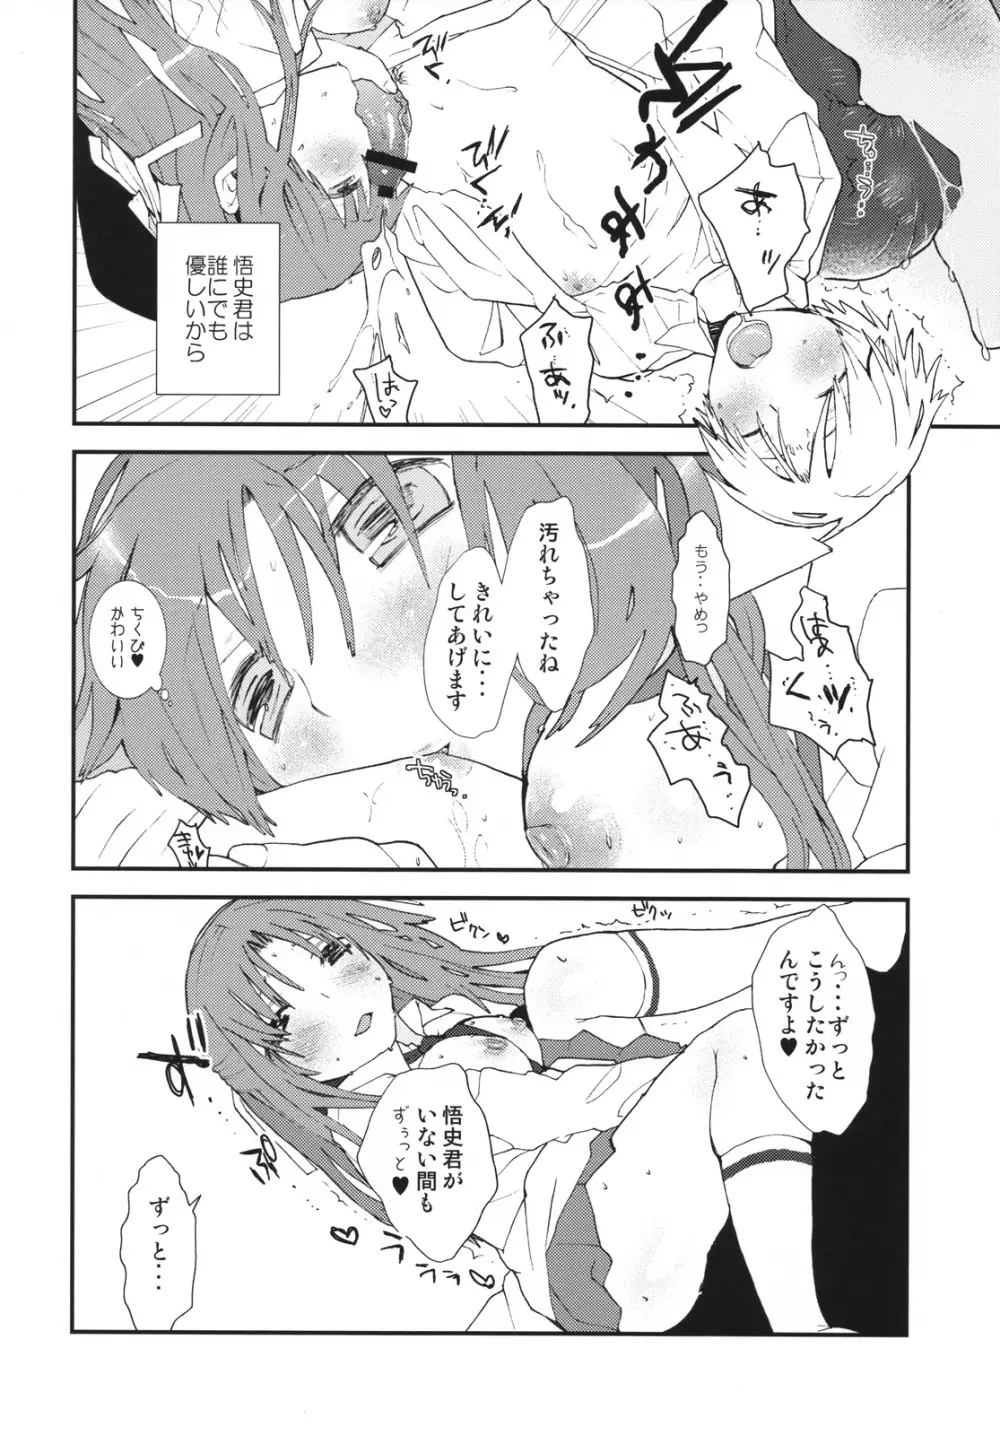 Umineko sono higurashi 19ページ